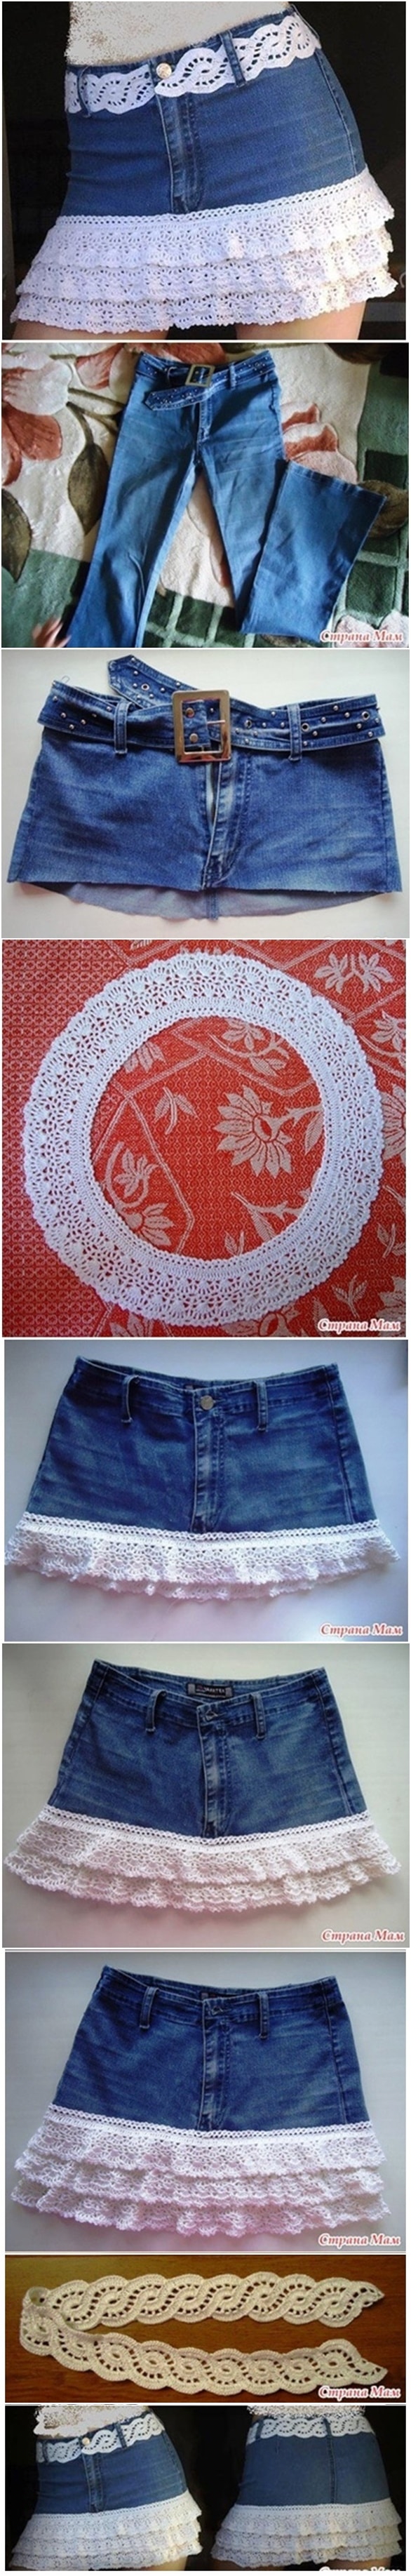 crochet-fringed-jean-skirt